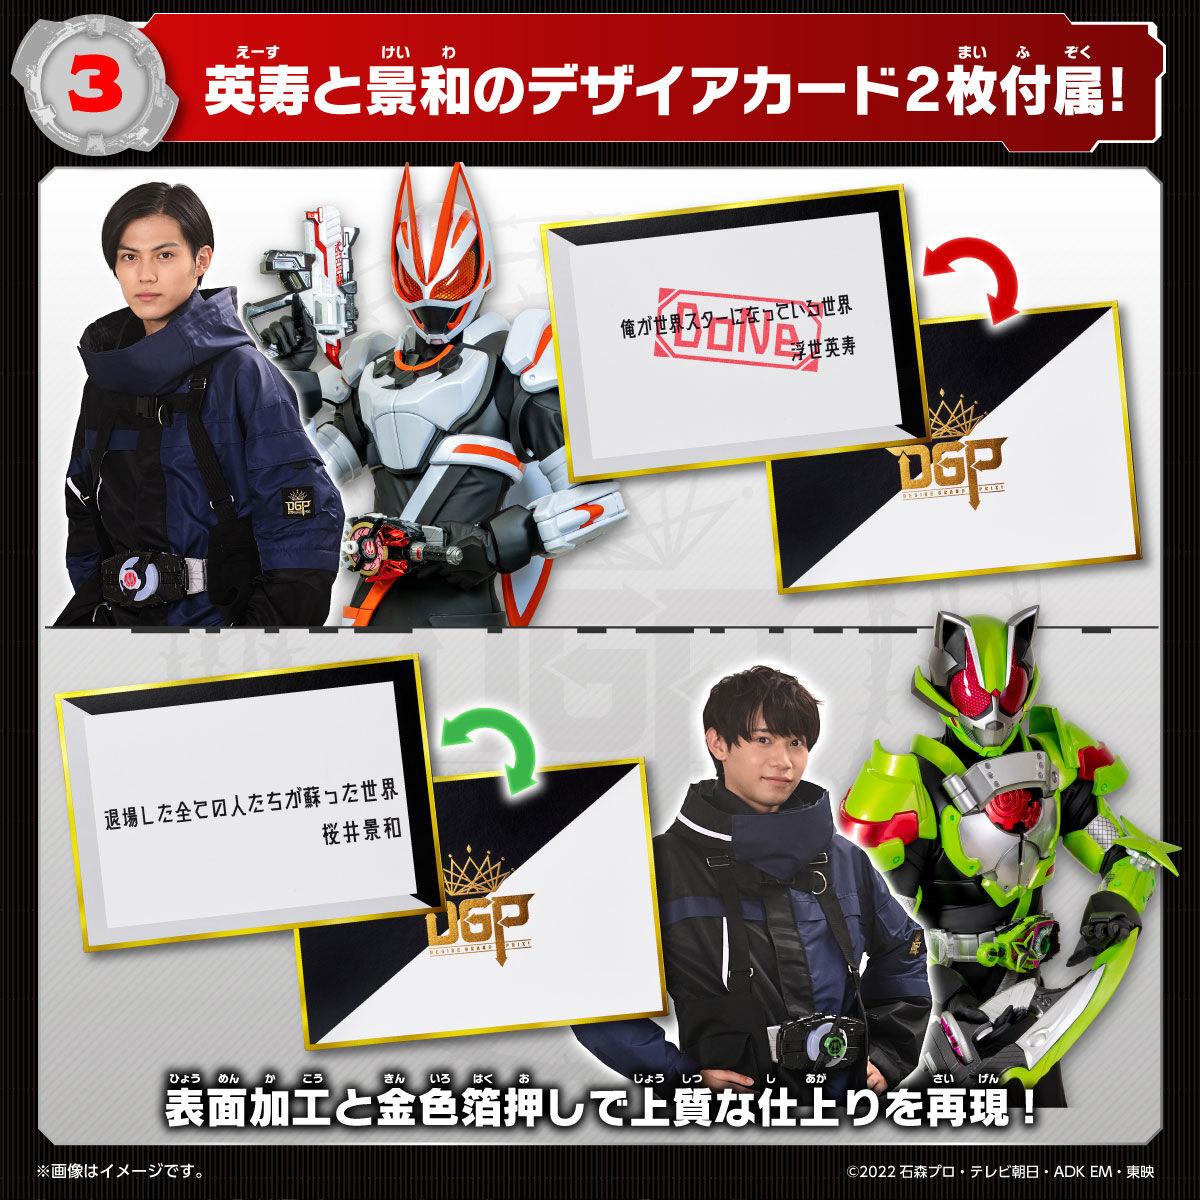 DX Kamen Rider Sound Core ID Set 01